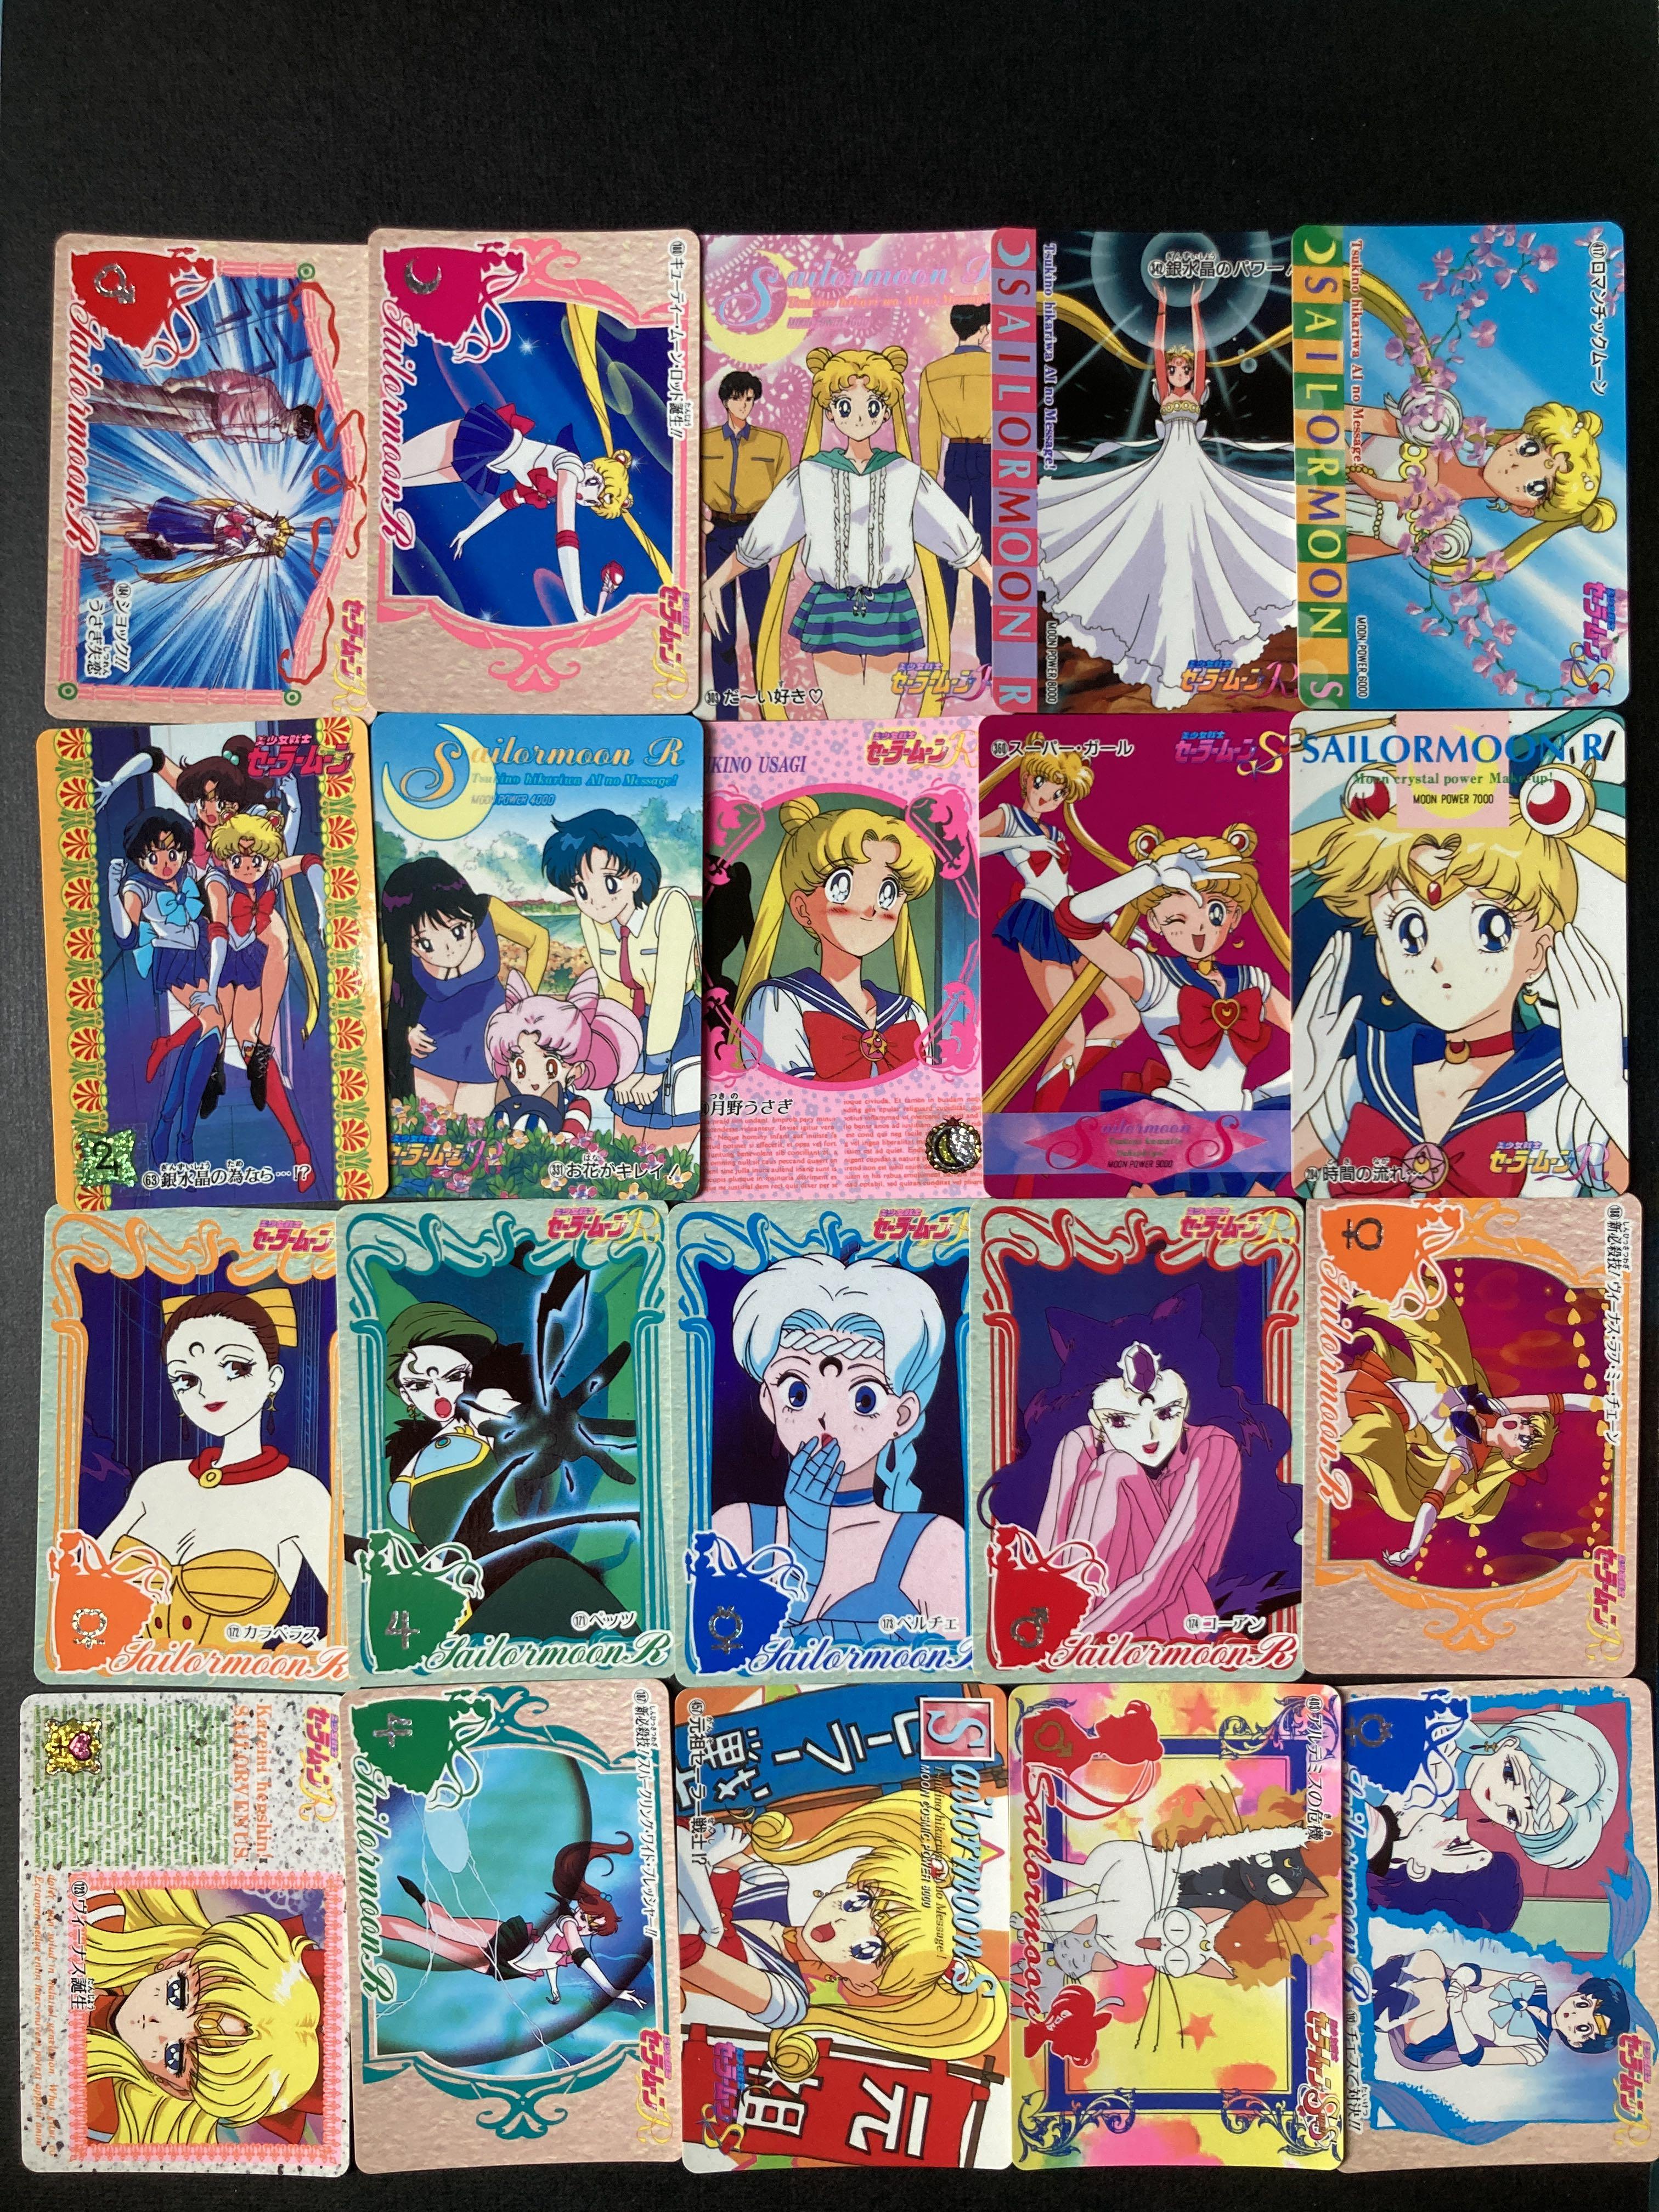 Set 1 美少女戰士個人團體白咭人物卡張出清套裝 Sailor Moon月野兔水野亞美火野麗木野真琴愛野美奈子豆釘兔地場衛sailormoon 包平郵 玩具 遊戲類 其他 Carousell